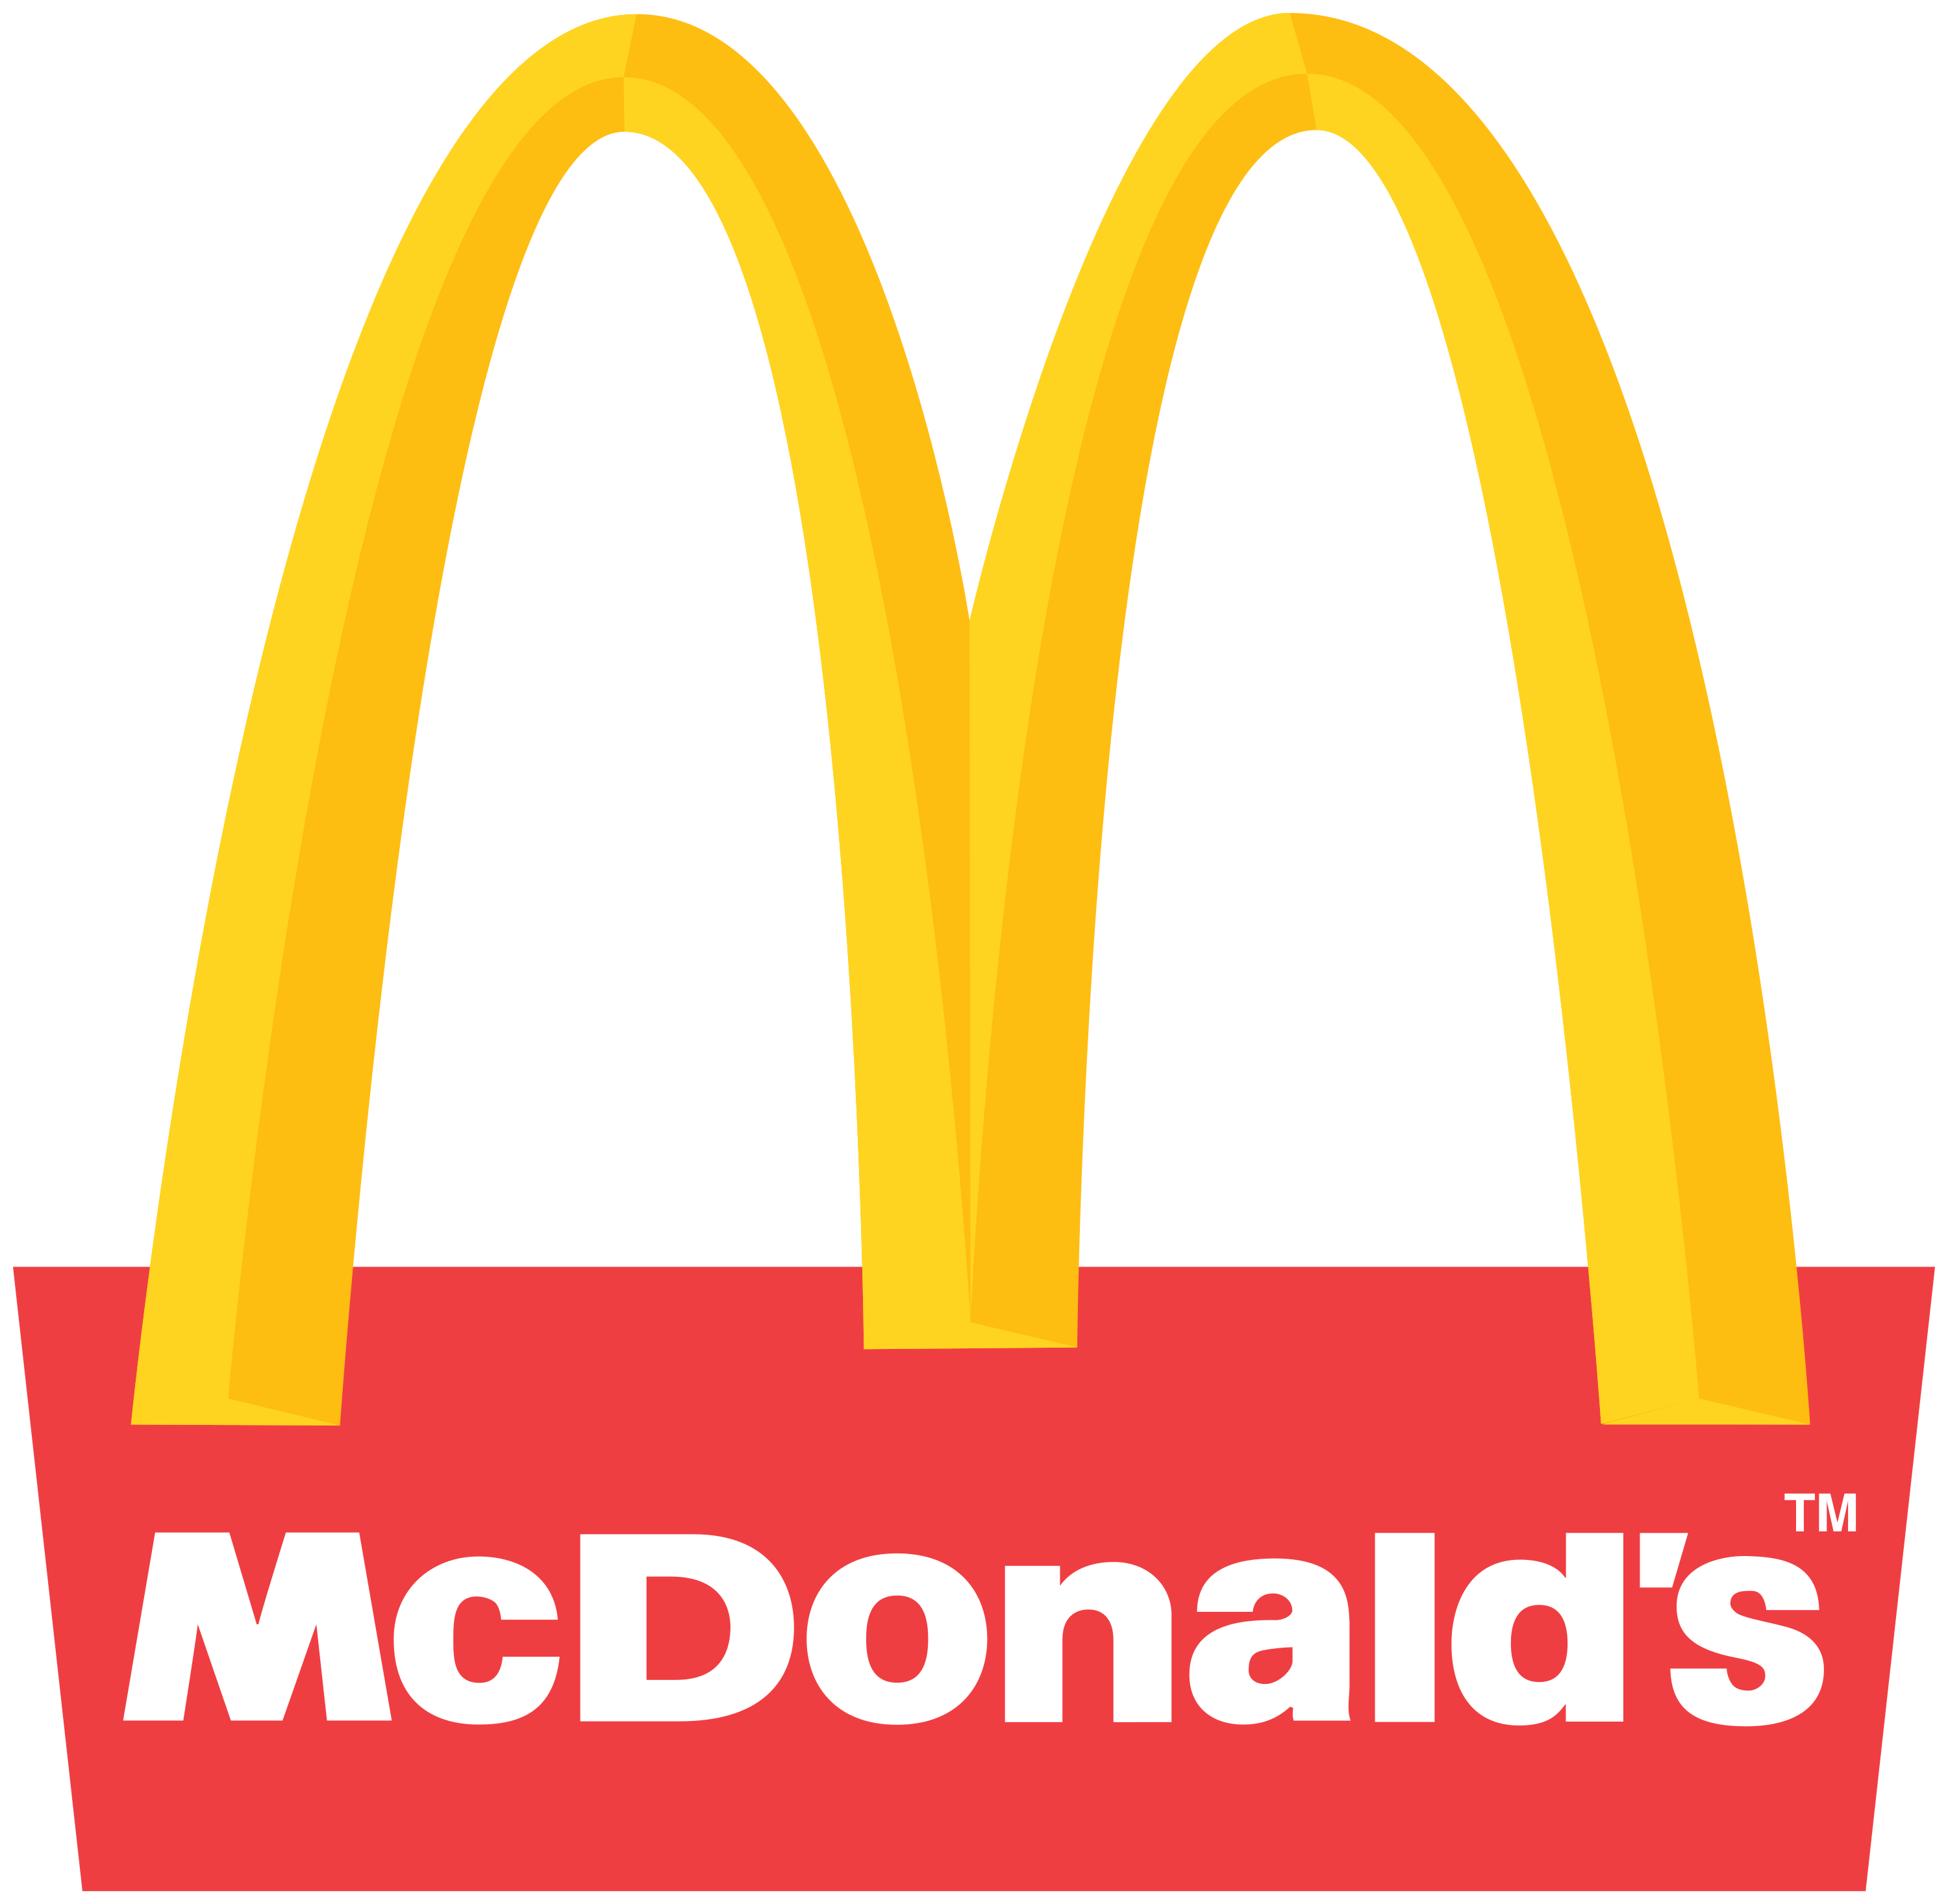 McDonald's Top Franchises 2020